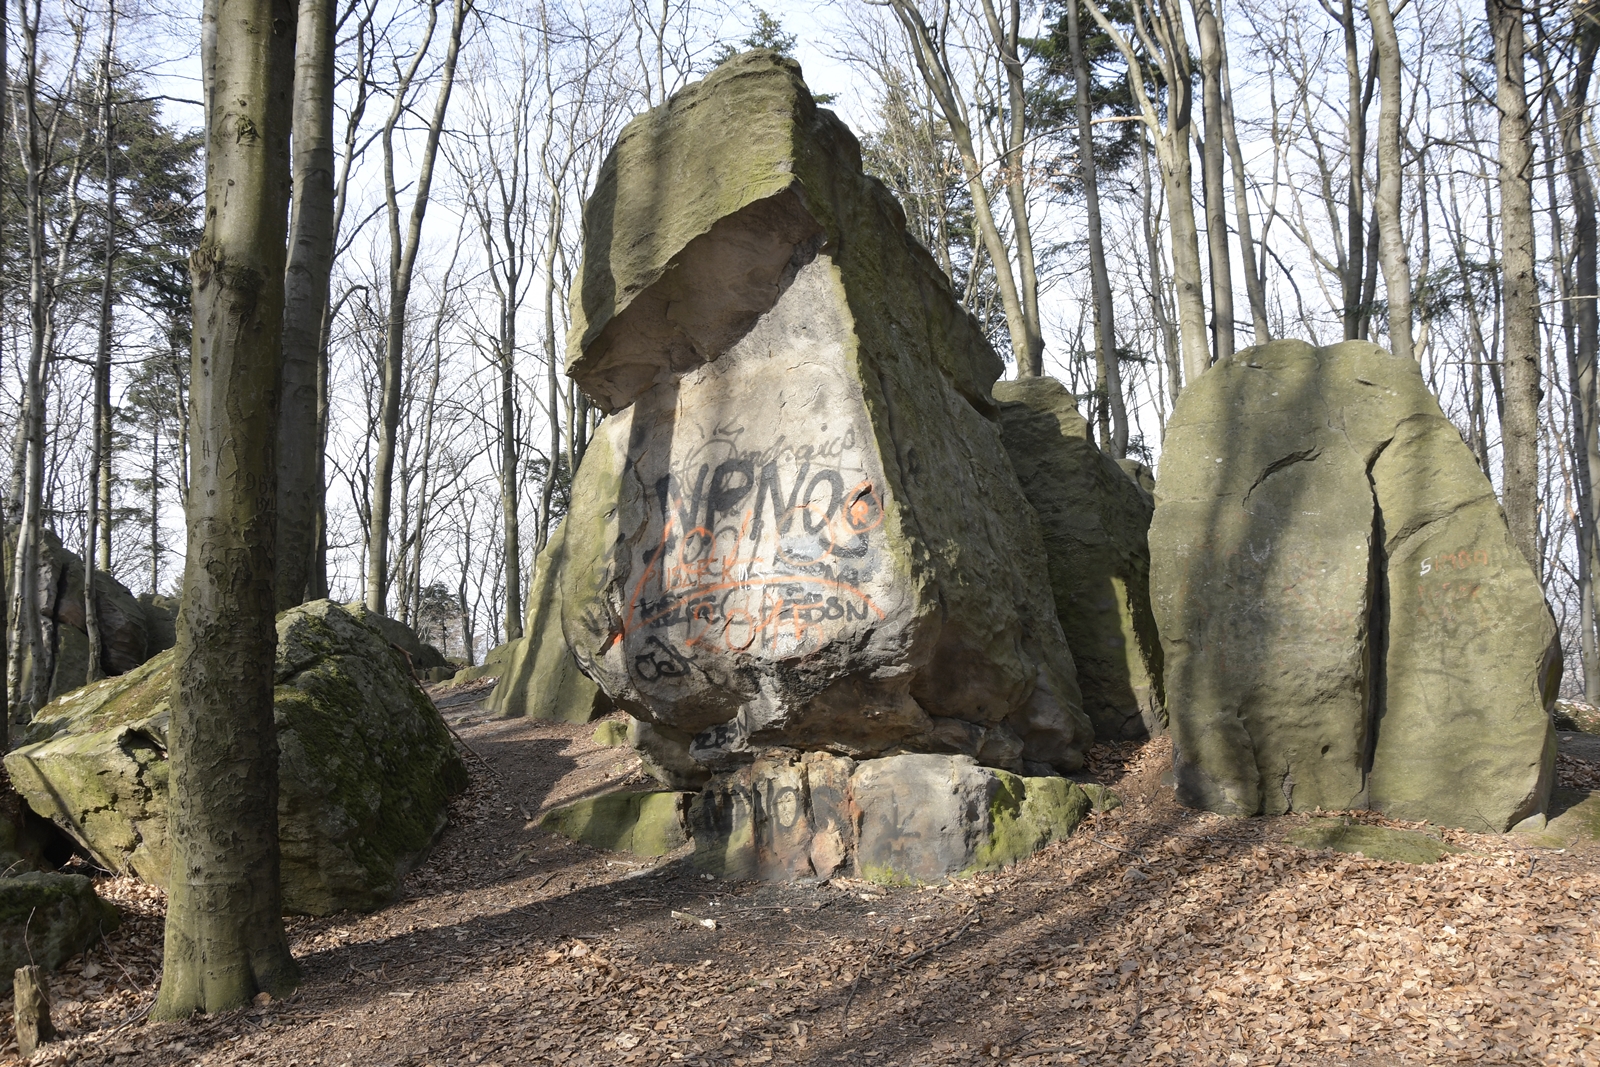 Cztery największe skały na Bukowej Górze, z najwyższą skałą pokrytą brzydkim grafitti.